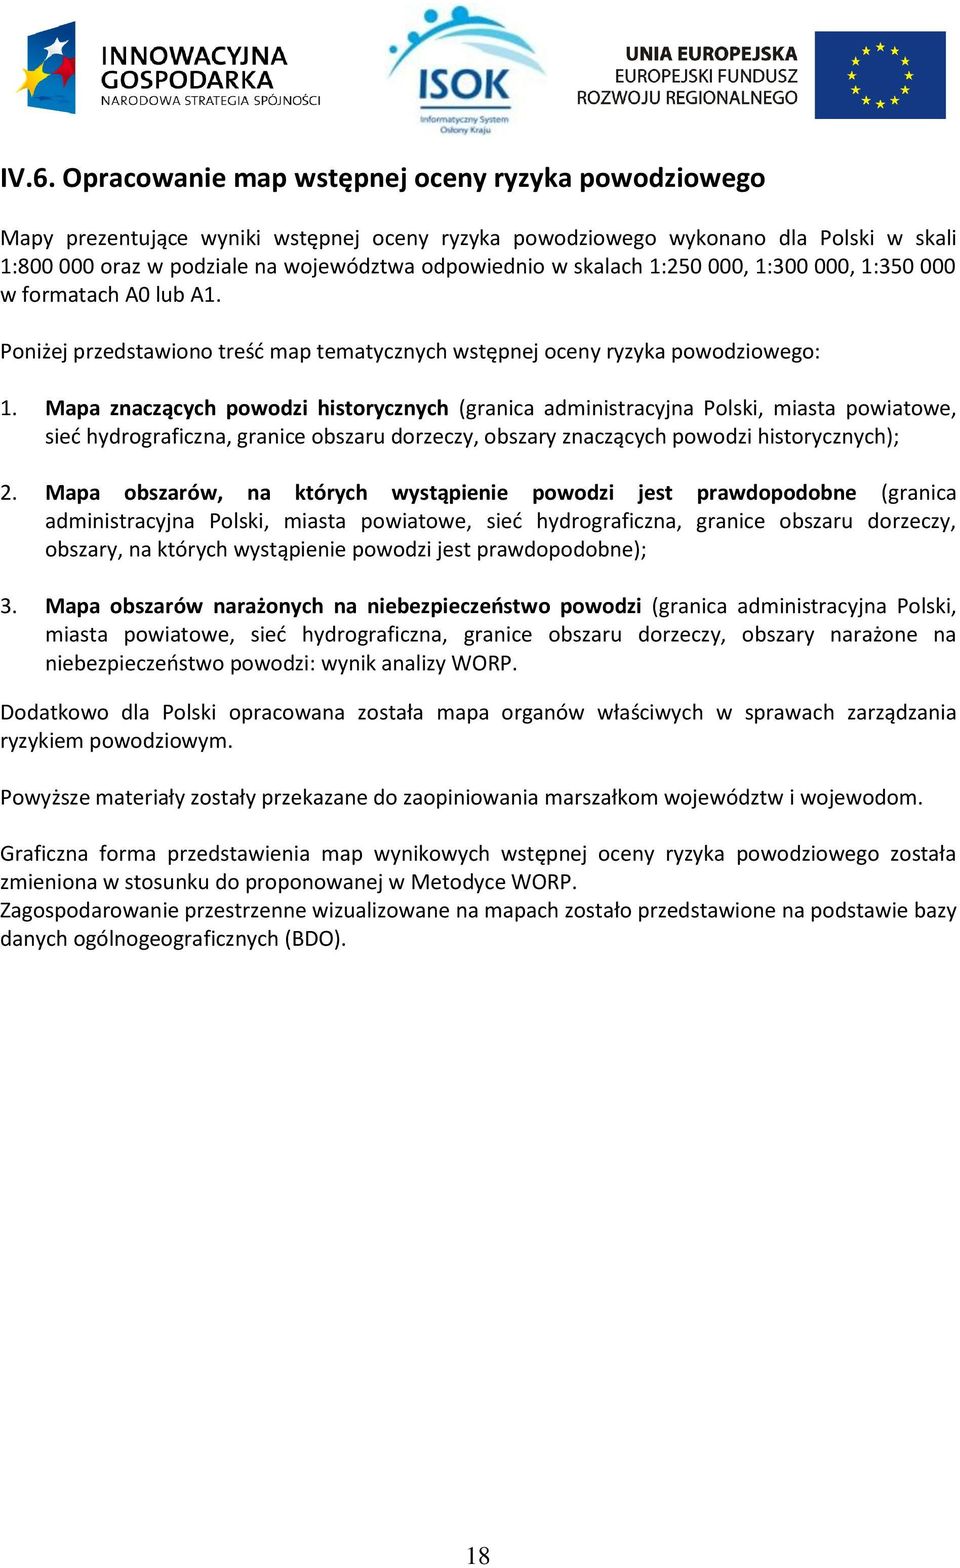 Mapa znaczących powodzi historycznych (granica administracyjna Polski, miasta powiatowe, sieć hydrograficzna, granice obszaru dorzeczy, obszary znaczących powodzi historycznych); 2.